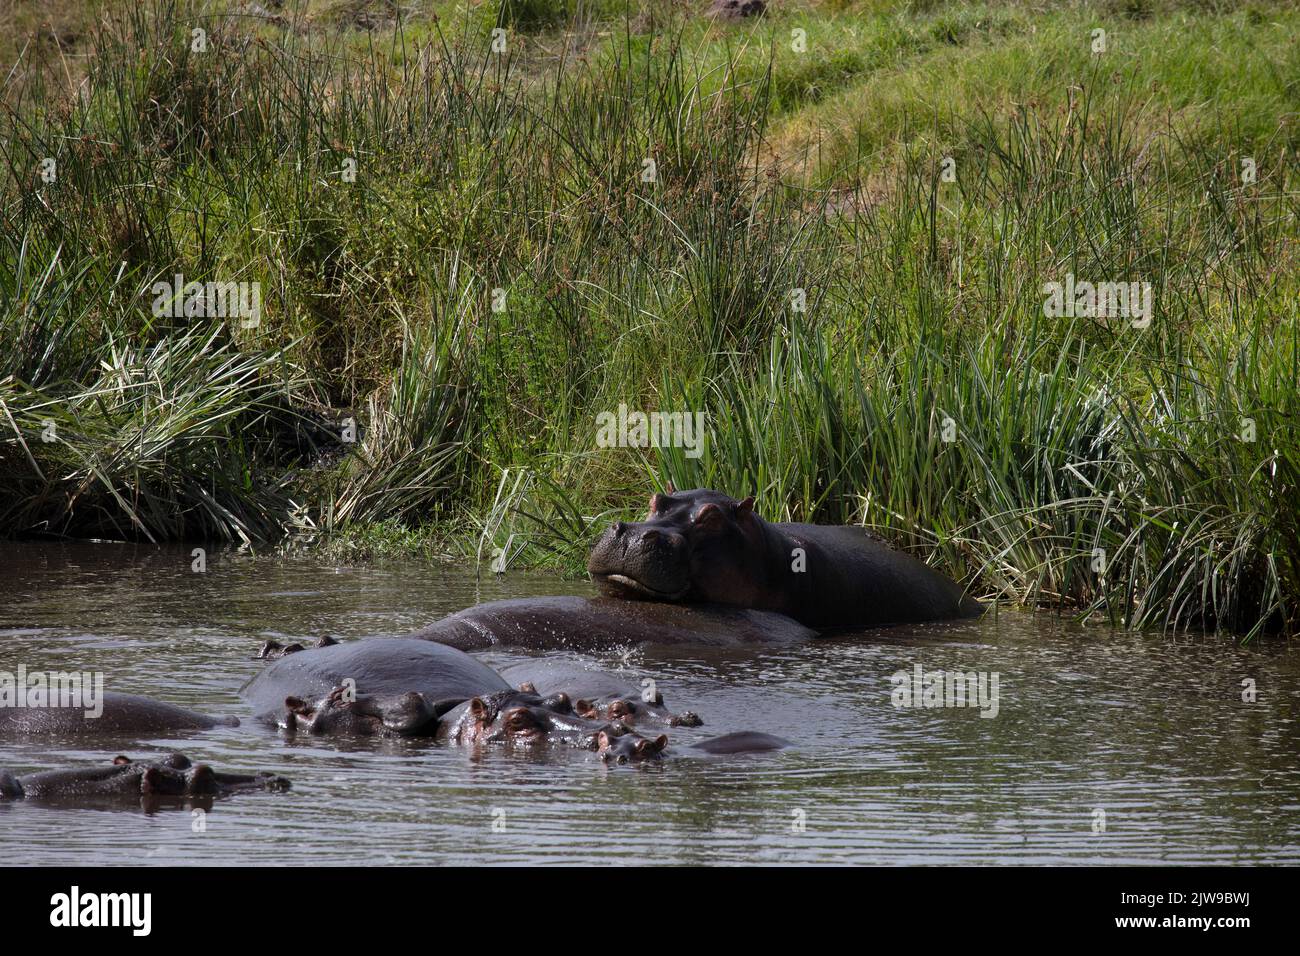 Hippopotamus (Hippopotamus amphibius), Familie im Teich, Krater Ngorongoro, Tansania, E Afrika, Von Dembinsky Photo Assoc Stockfoto